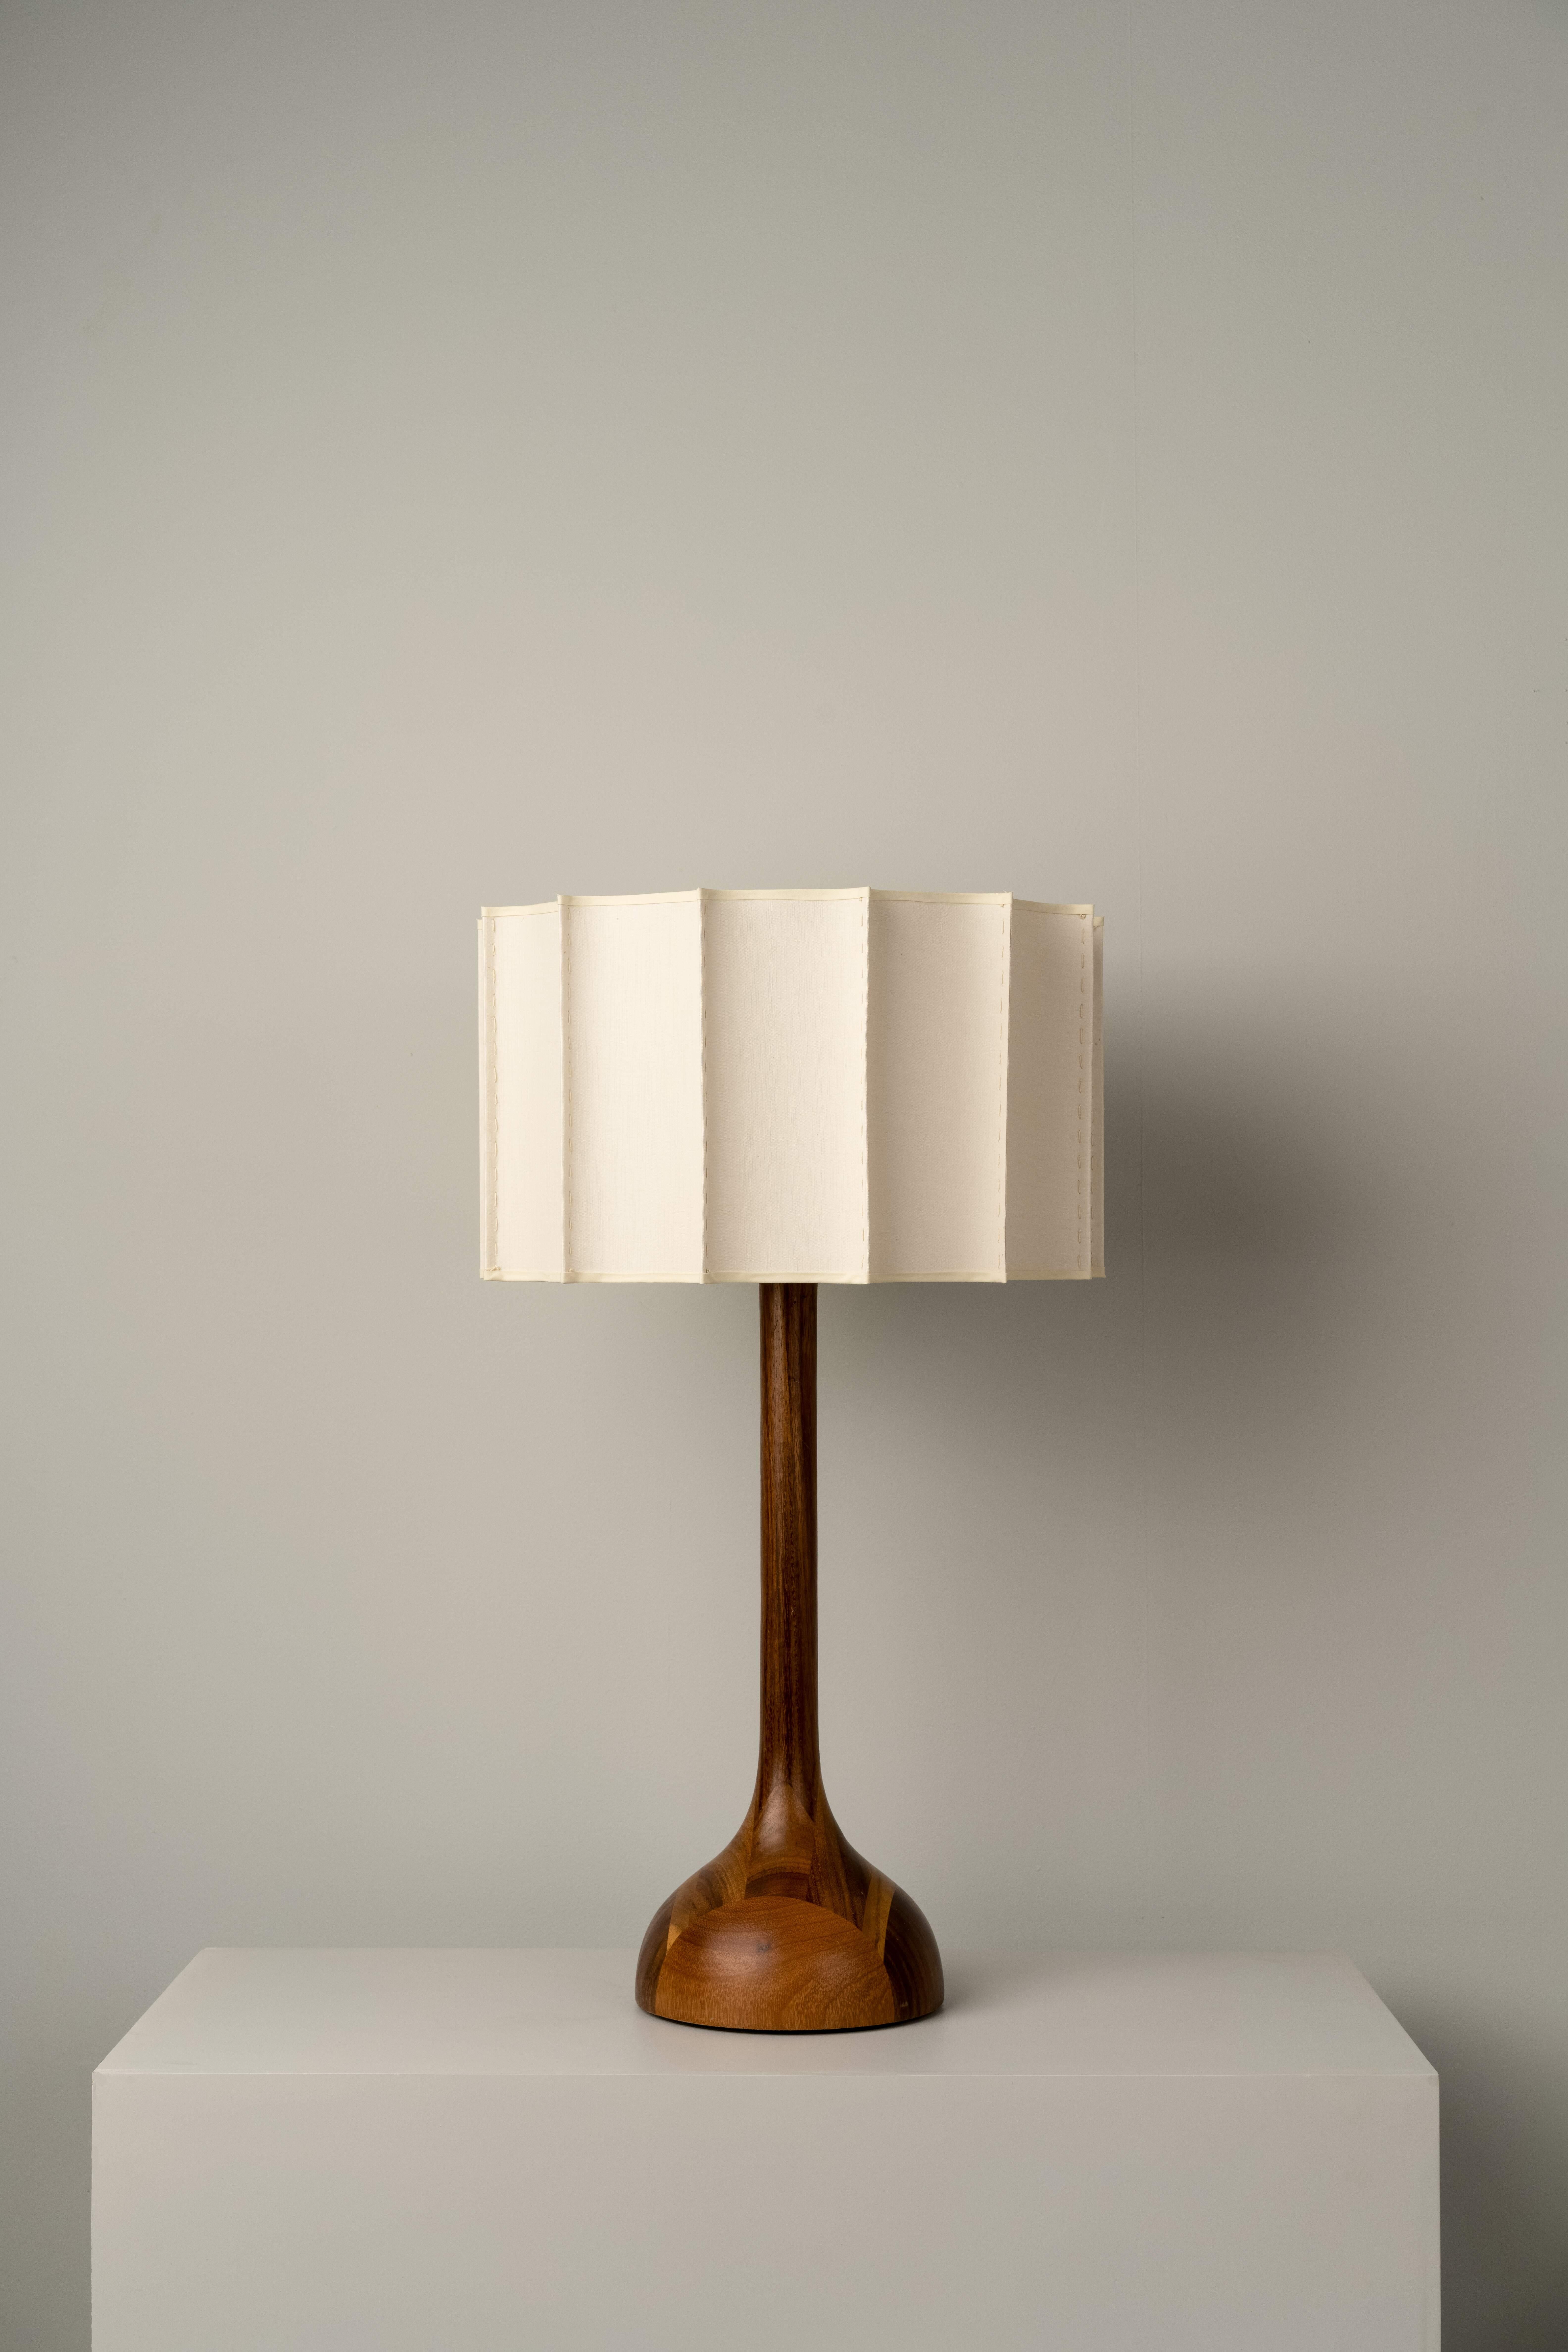 La lampe de table PATA DE ELEFANTE MEDIUM a été conçue pour la collection Atomic par l'artiste mexicaine Isabel Moncada.

Nommé Pata de Elefante - Pied d'éléphant - en raison de la forme proéminente de sa base. Séparé par une longue tige, son